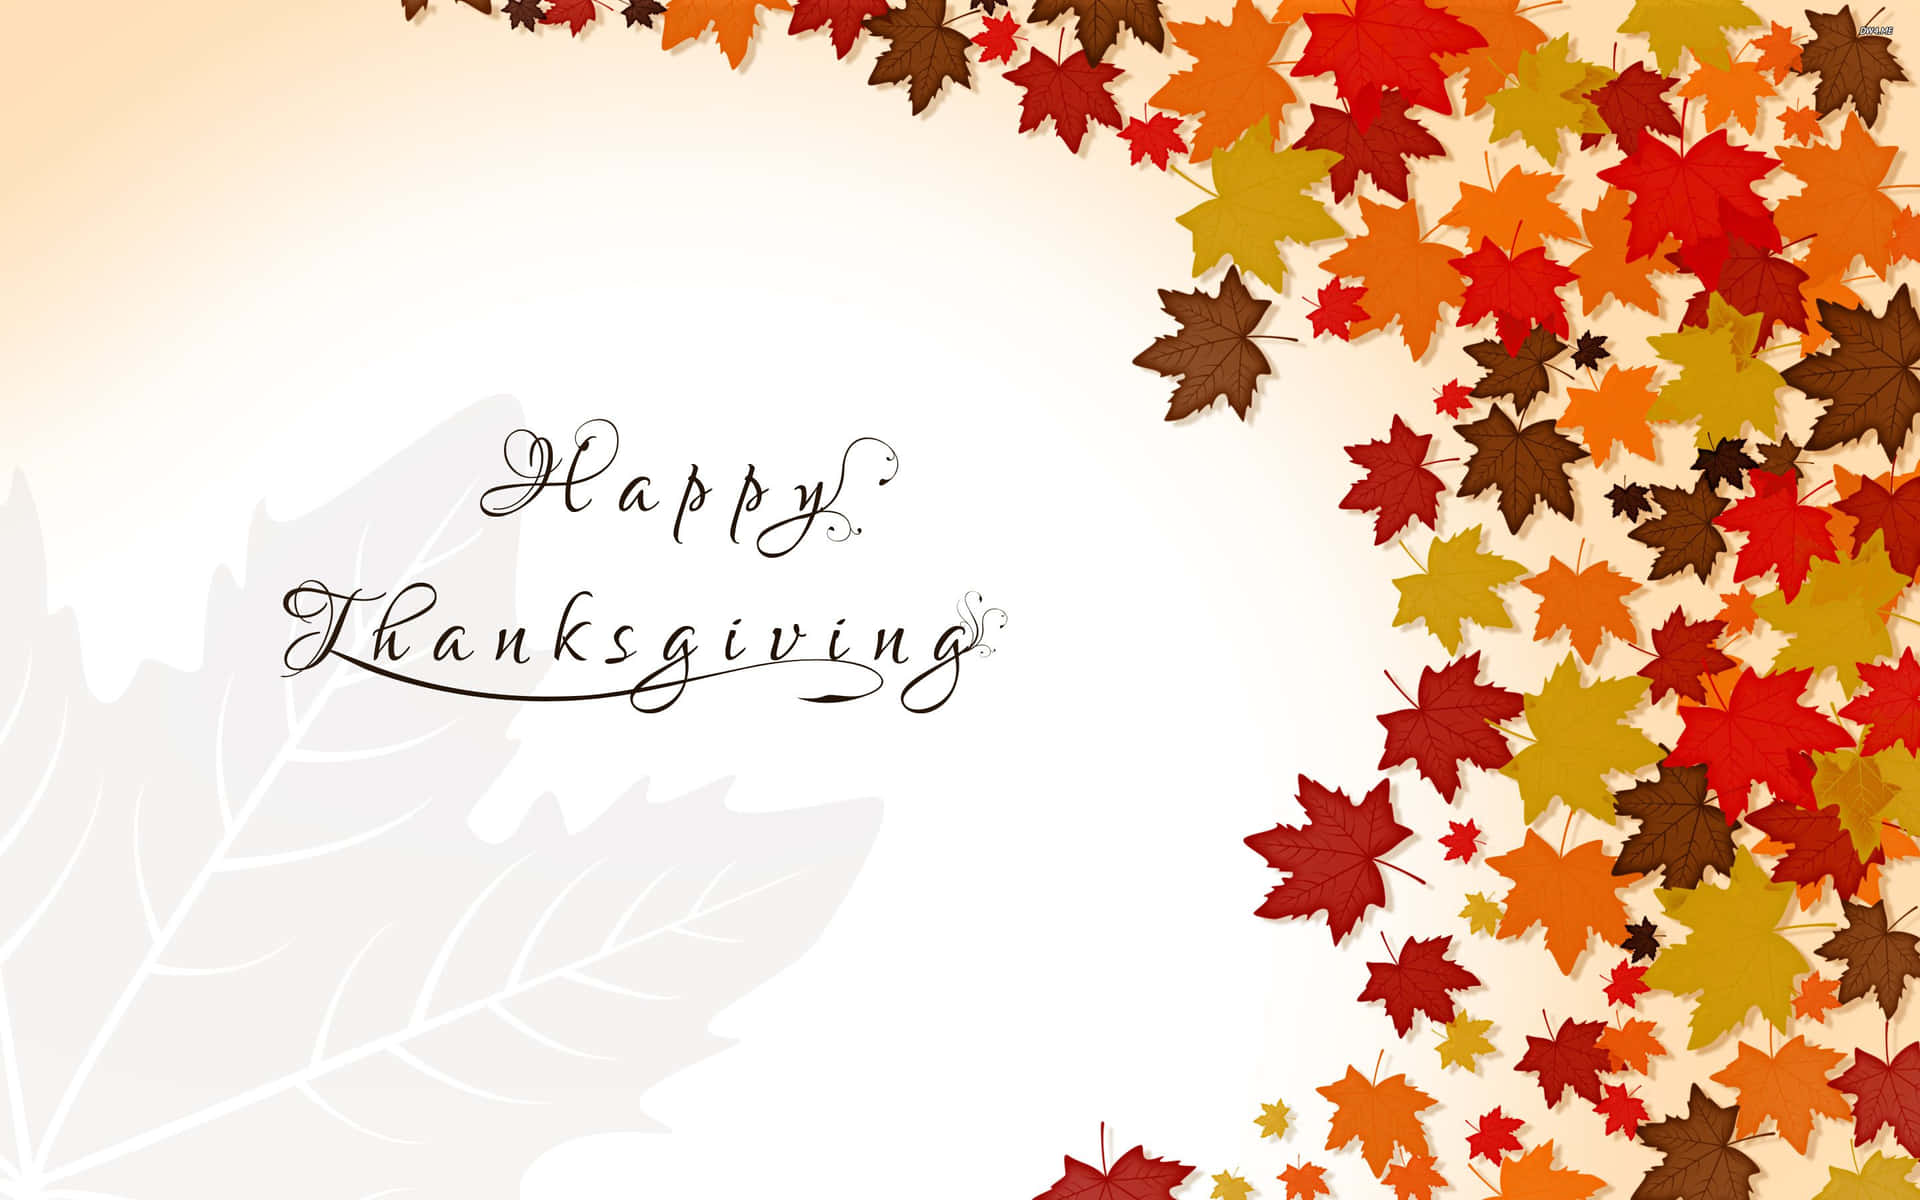 'Glædelig Thanksgiving!' Wallpaper